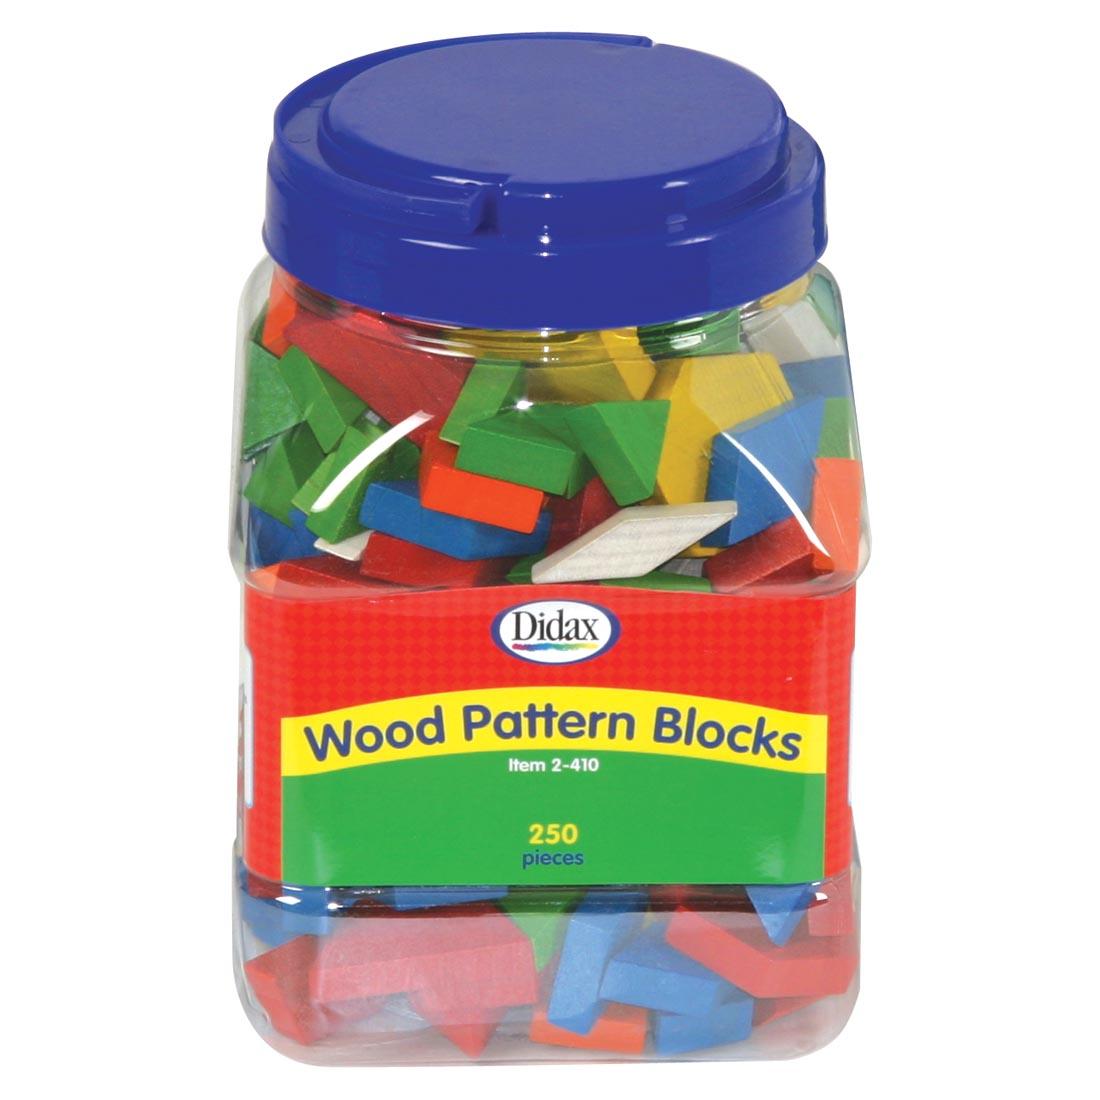 Didax Wood Pattern Blocks